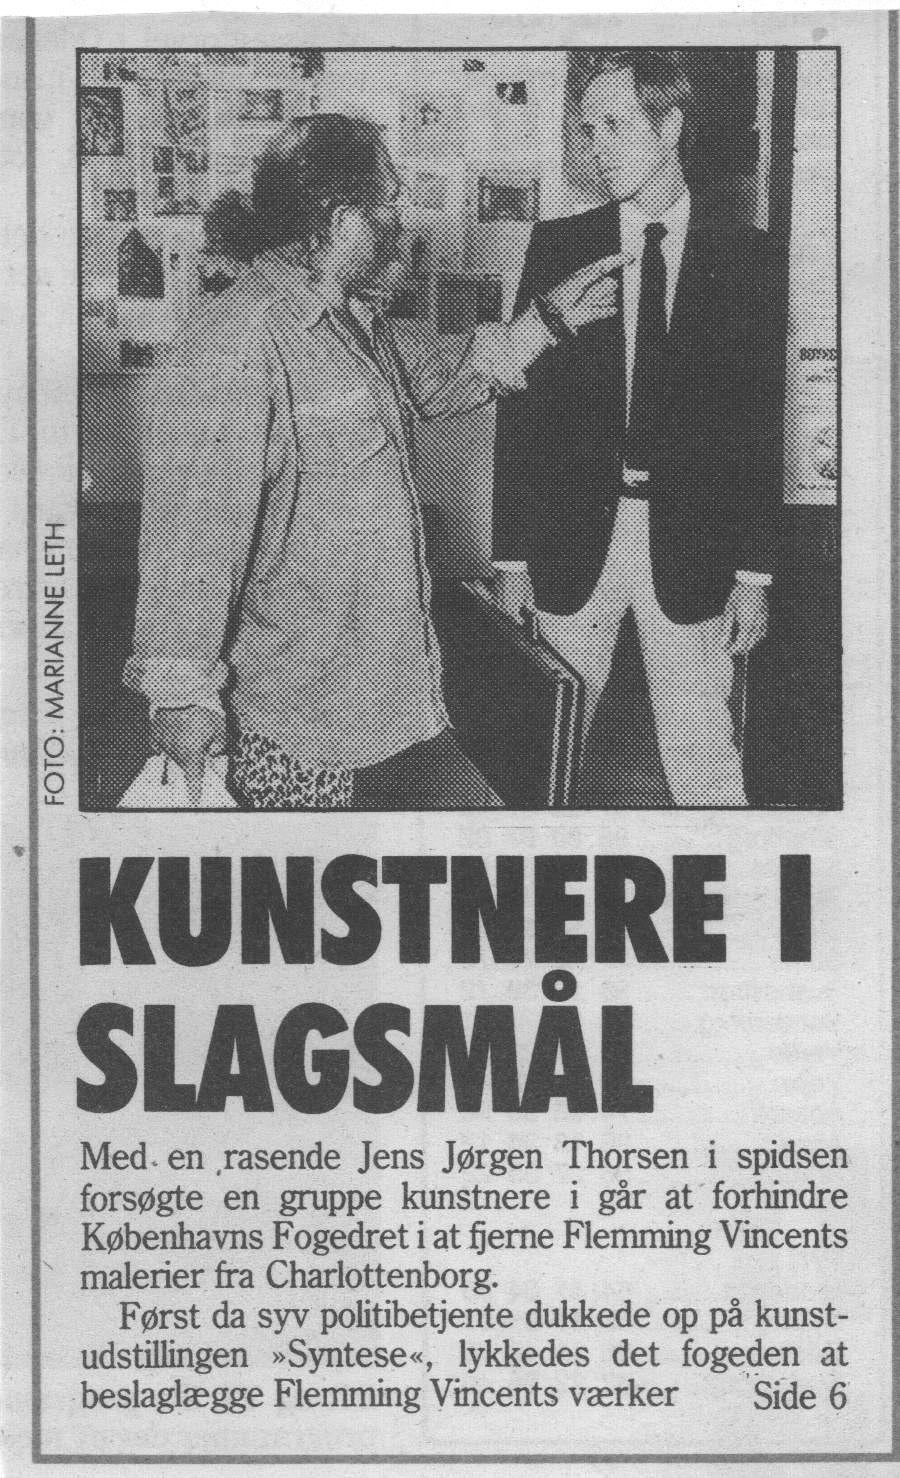 Kunstnere i slagsmål. Omtale (Retssag. Den lange rejse. Charlottenborg 1989, København). Det Fri Aktuelt.